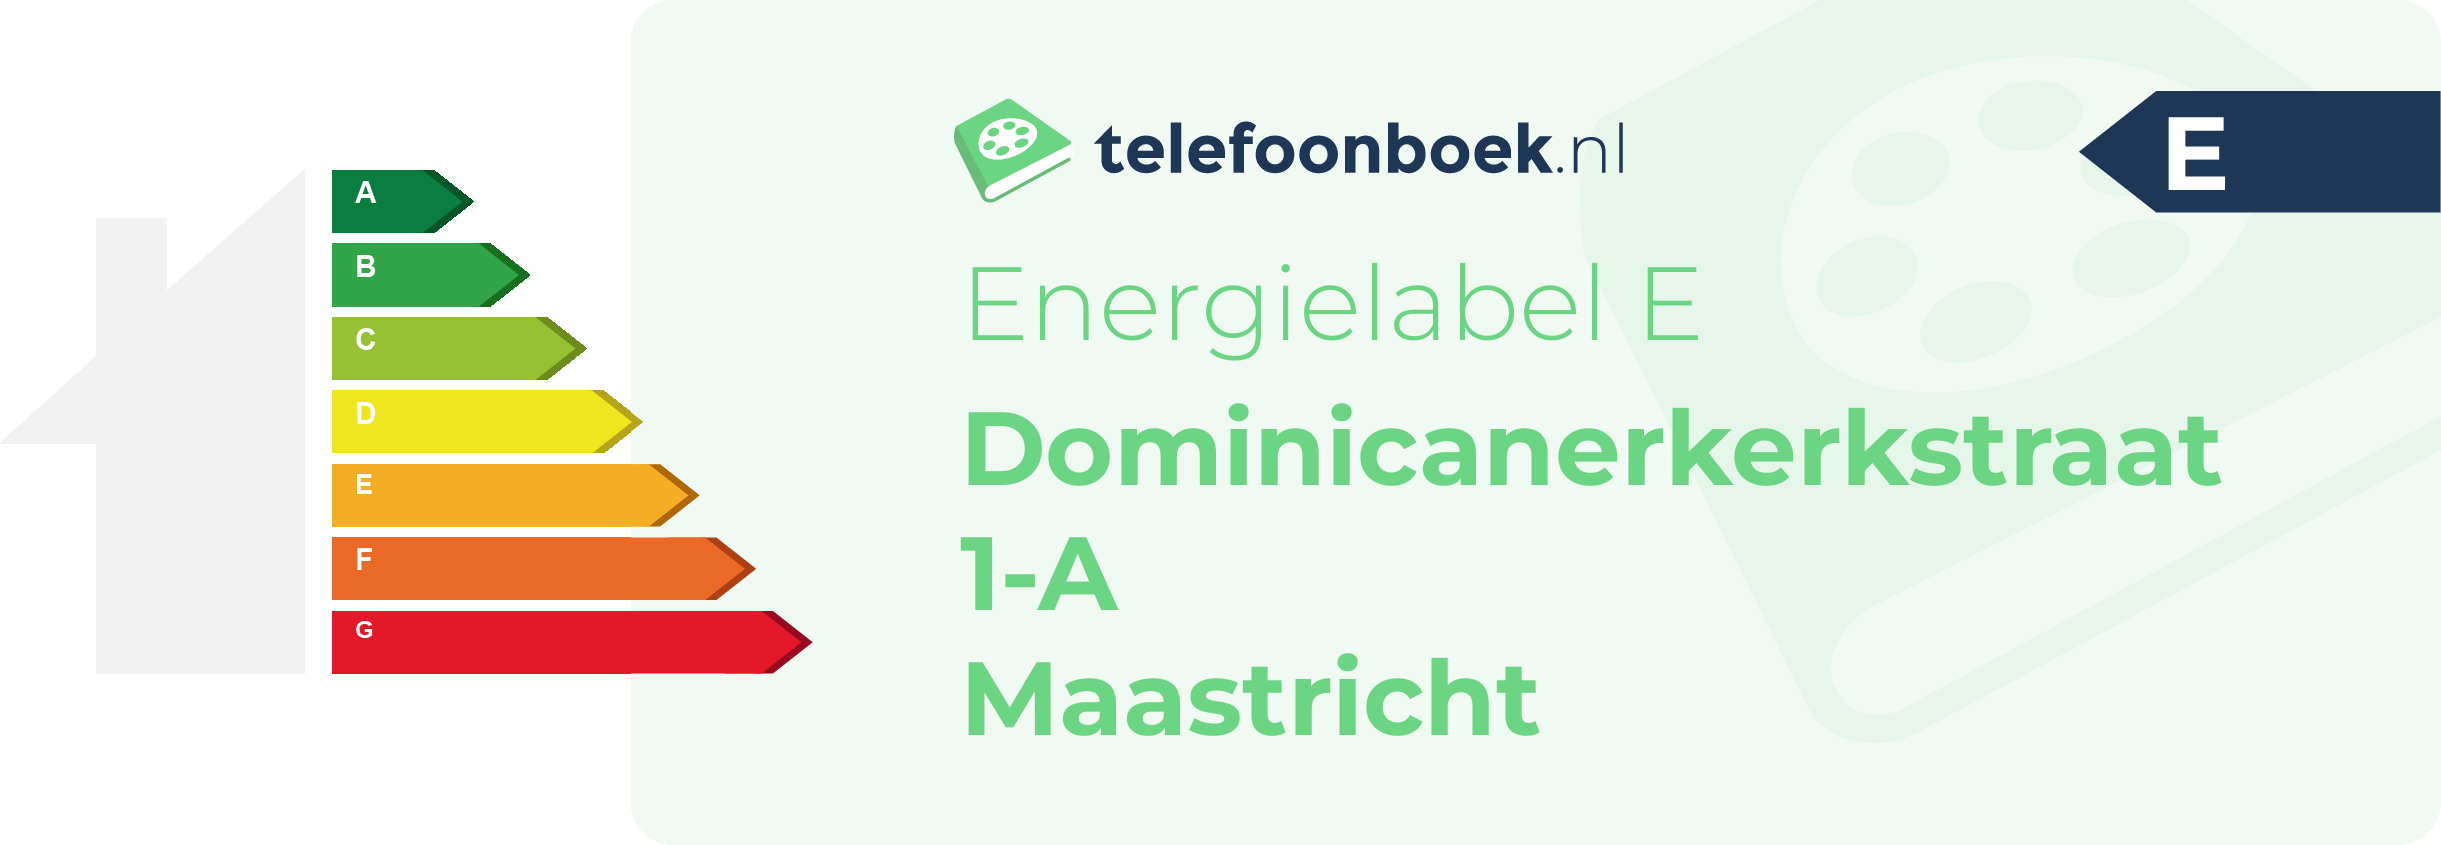 Energielabel Dominicanerkerkstraat 1-A Maastricht